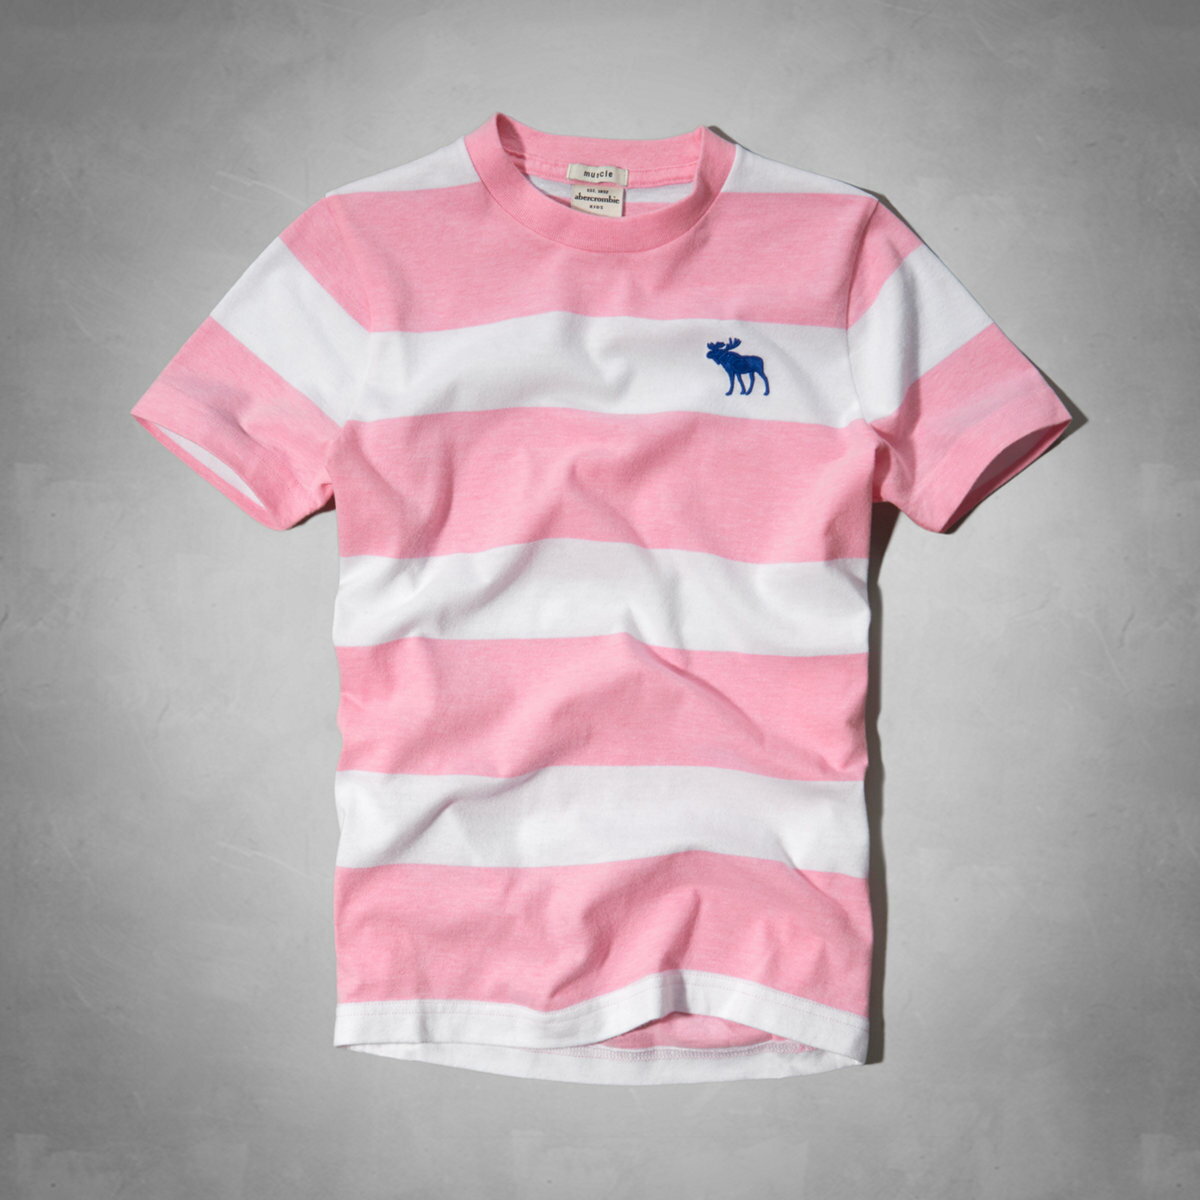 美國百分百【全新真品】Abercrombie & Fitch T恤 AF 短袖 T-shirt 麋鹿 粉紅 條紋 Logo 男 女 Kids S號